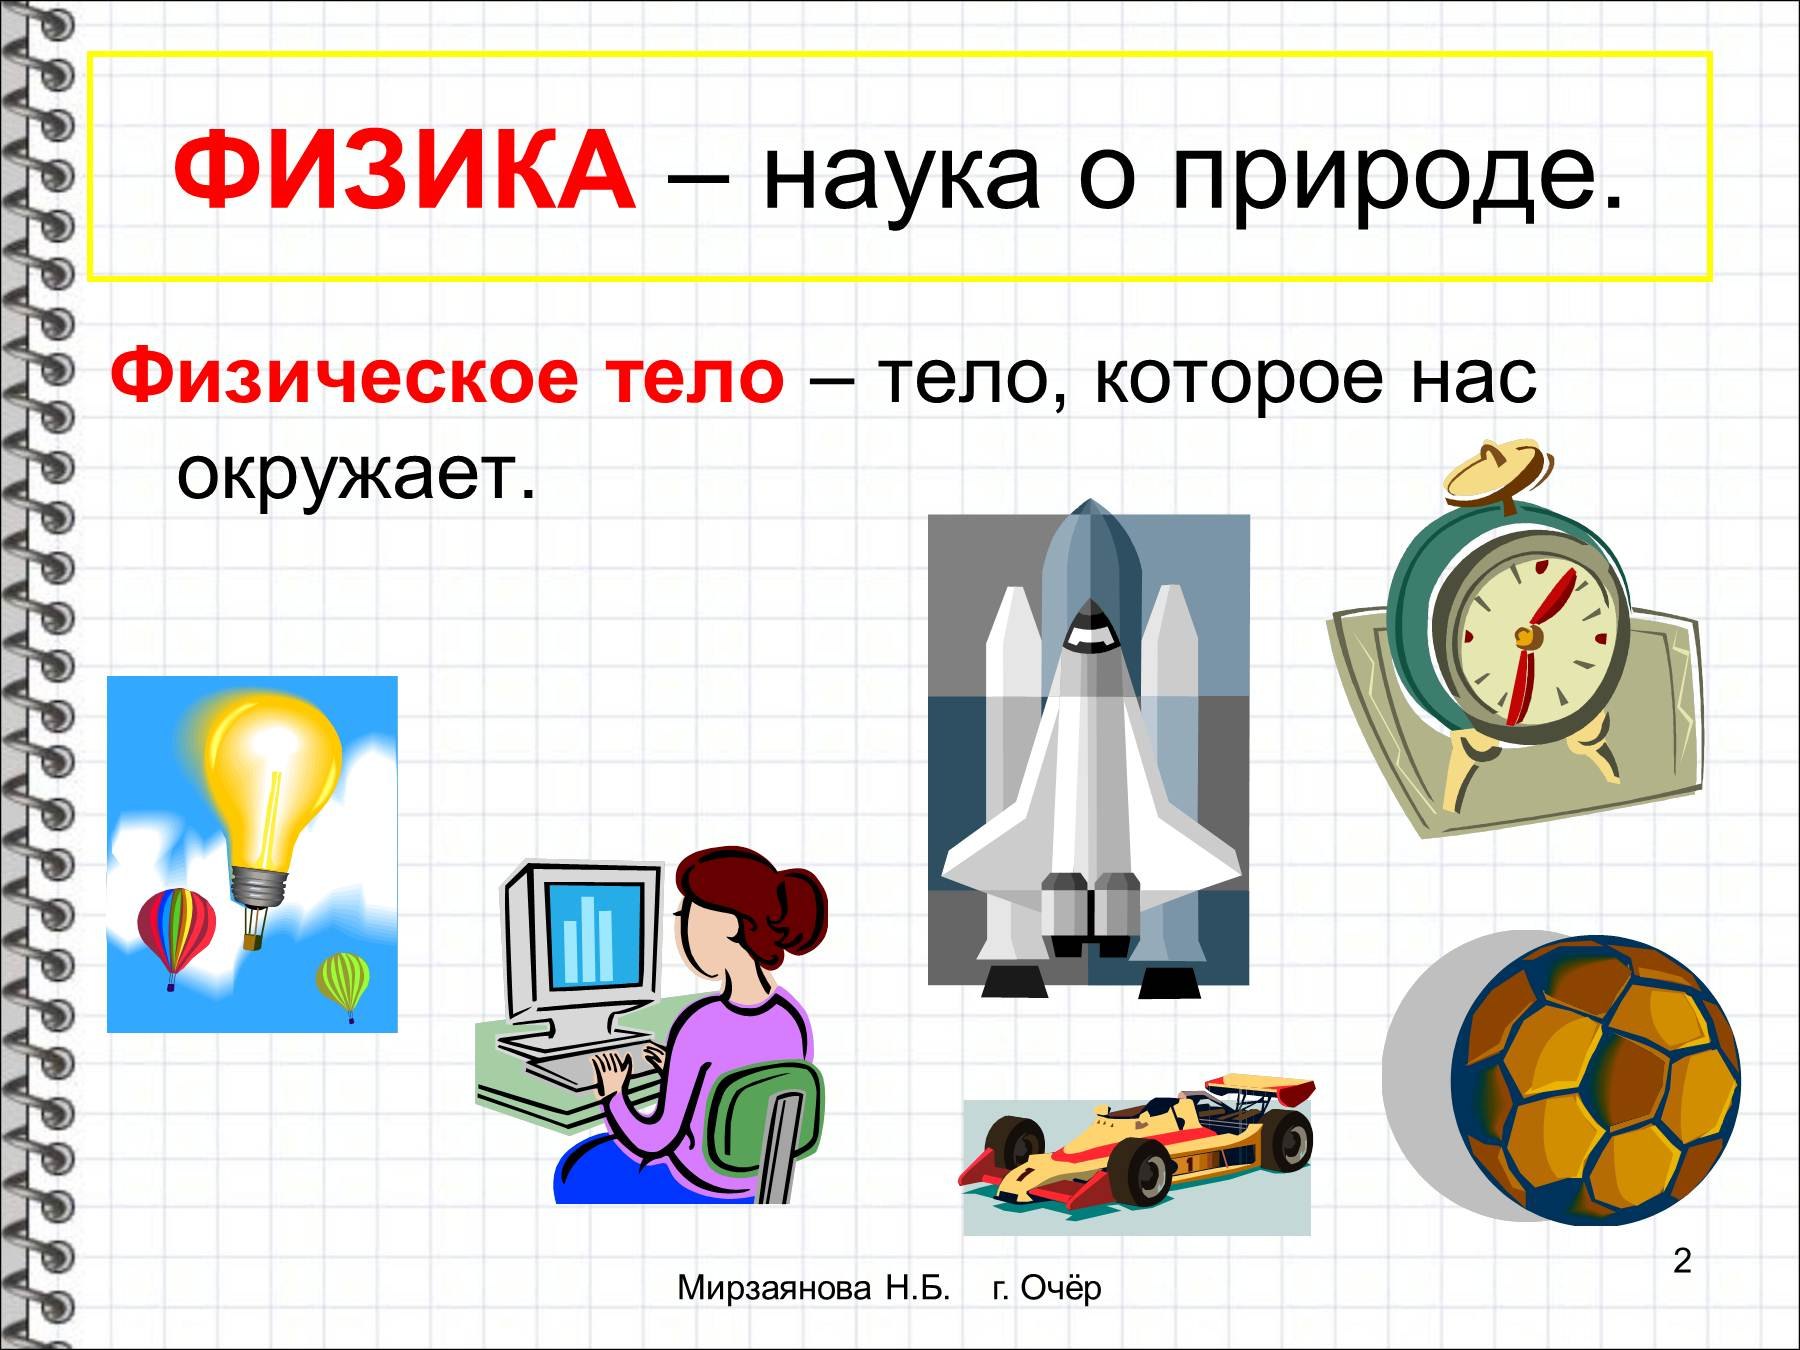 Физика презентация онлайн